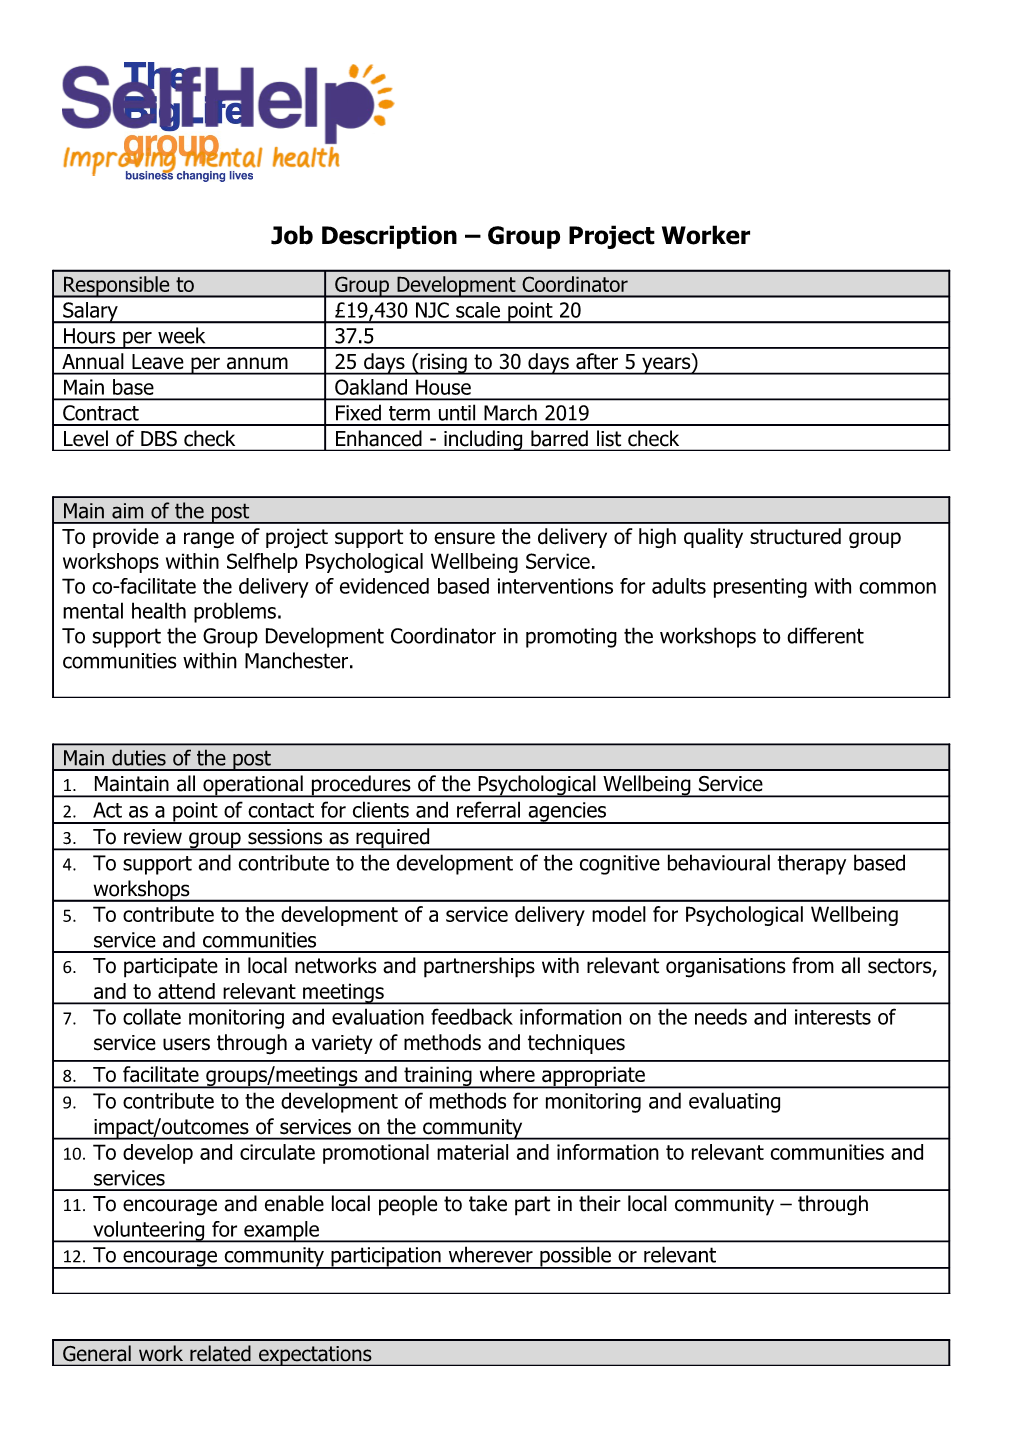 Job Description Group Project Worker